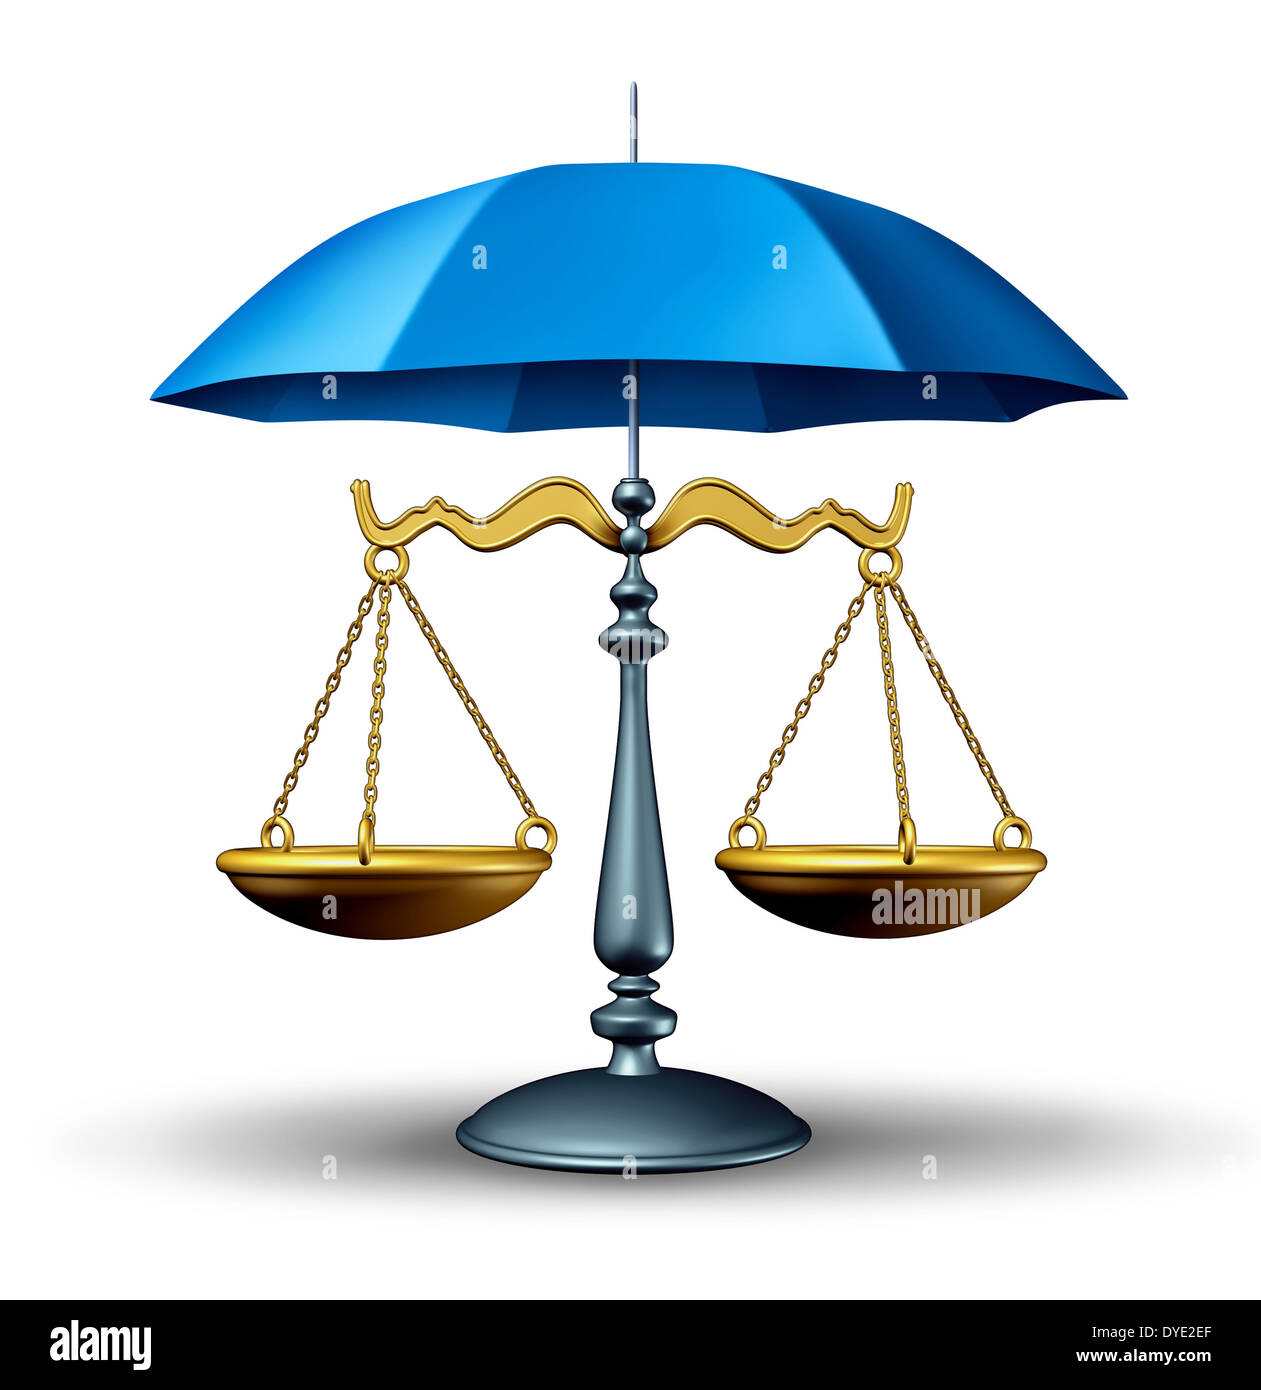 Rechtssicherheit-Konzept mit Maßstab Gerechtigkeit des Gesetzes durch eine blaue Regenschirm als Sicherheitssymbol für das Justizsystem in Regierung und Gesellschaft für den Schutz der Rechte und Vorschriften geschützt. Stockfoto